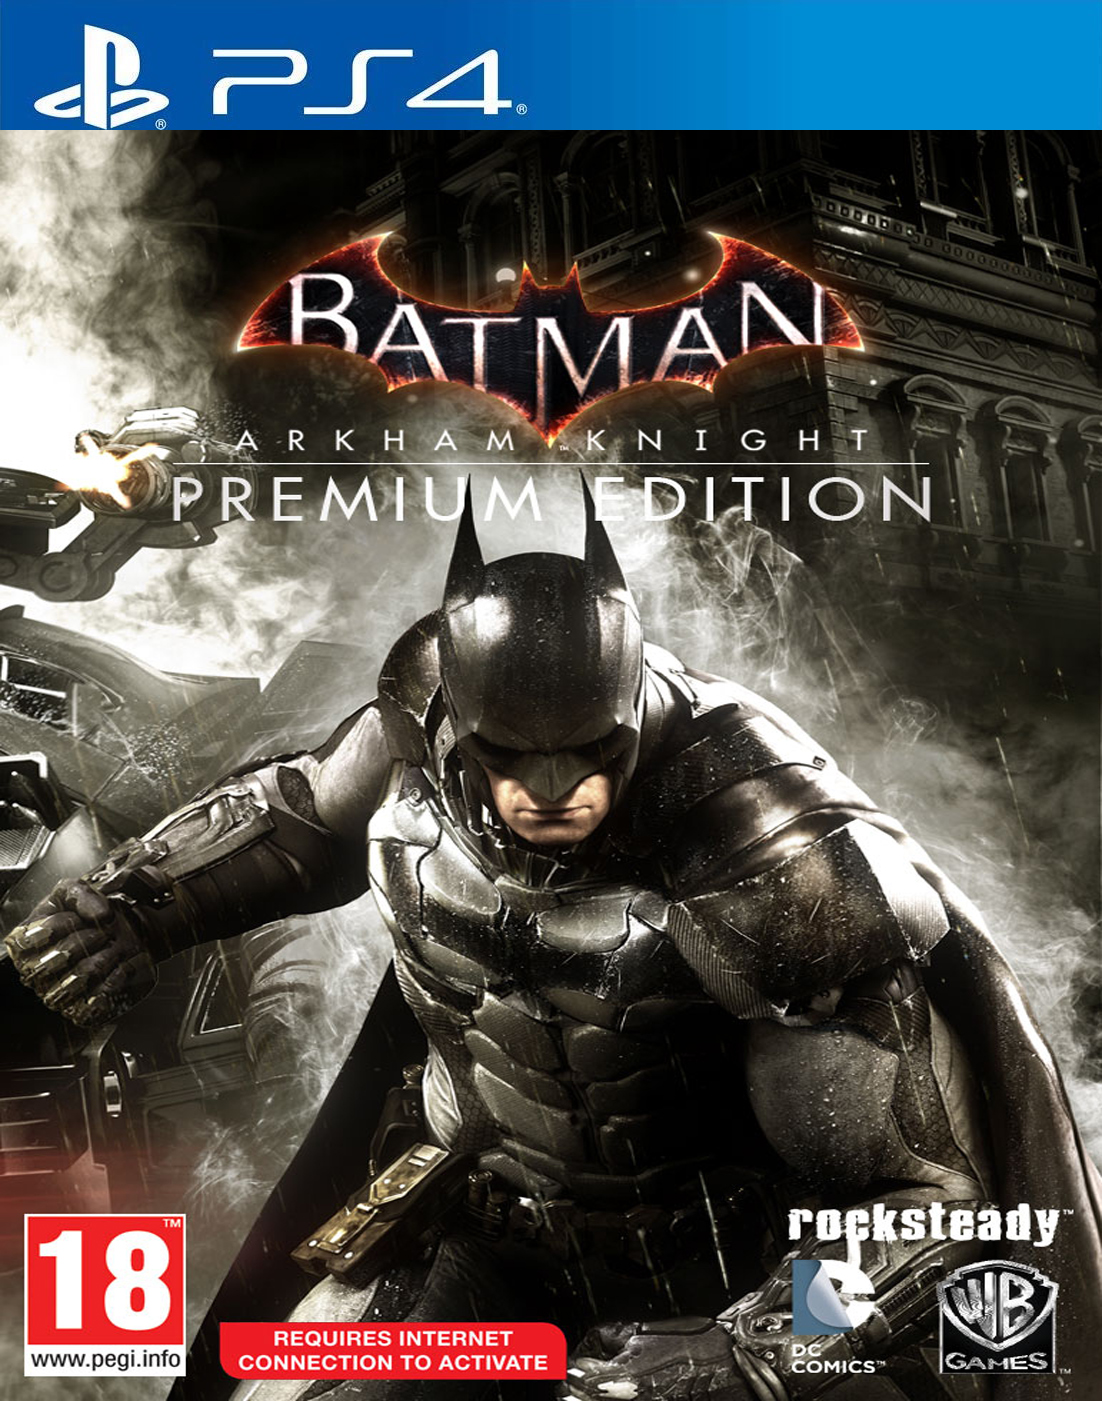 Batman Arkham knight Premium Edition PS4 - Portal Games